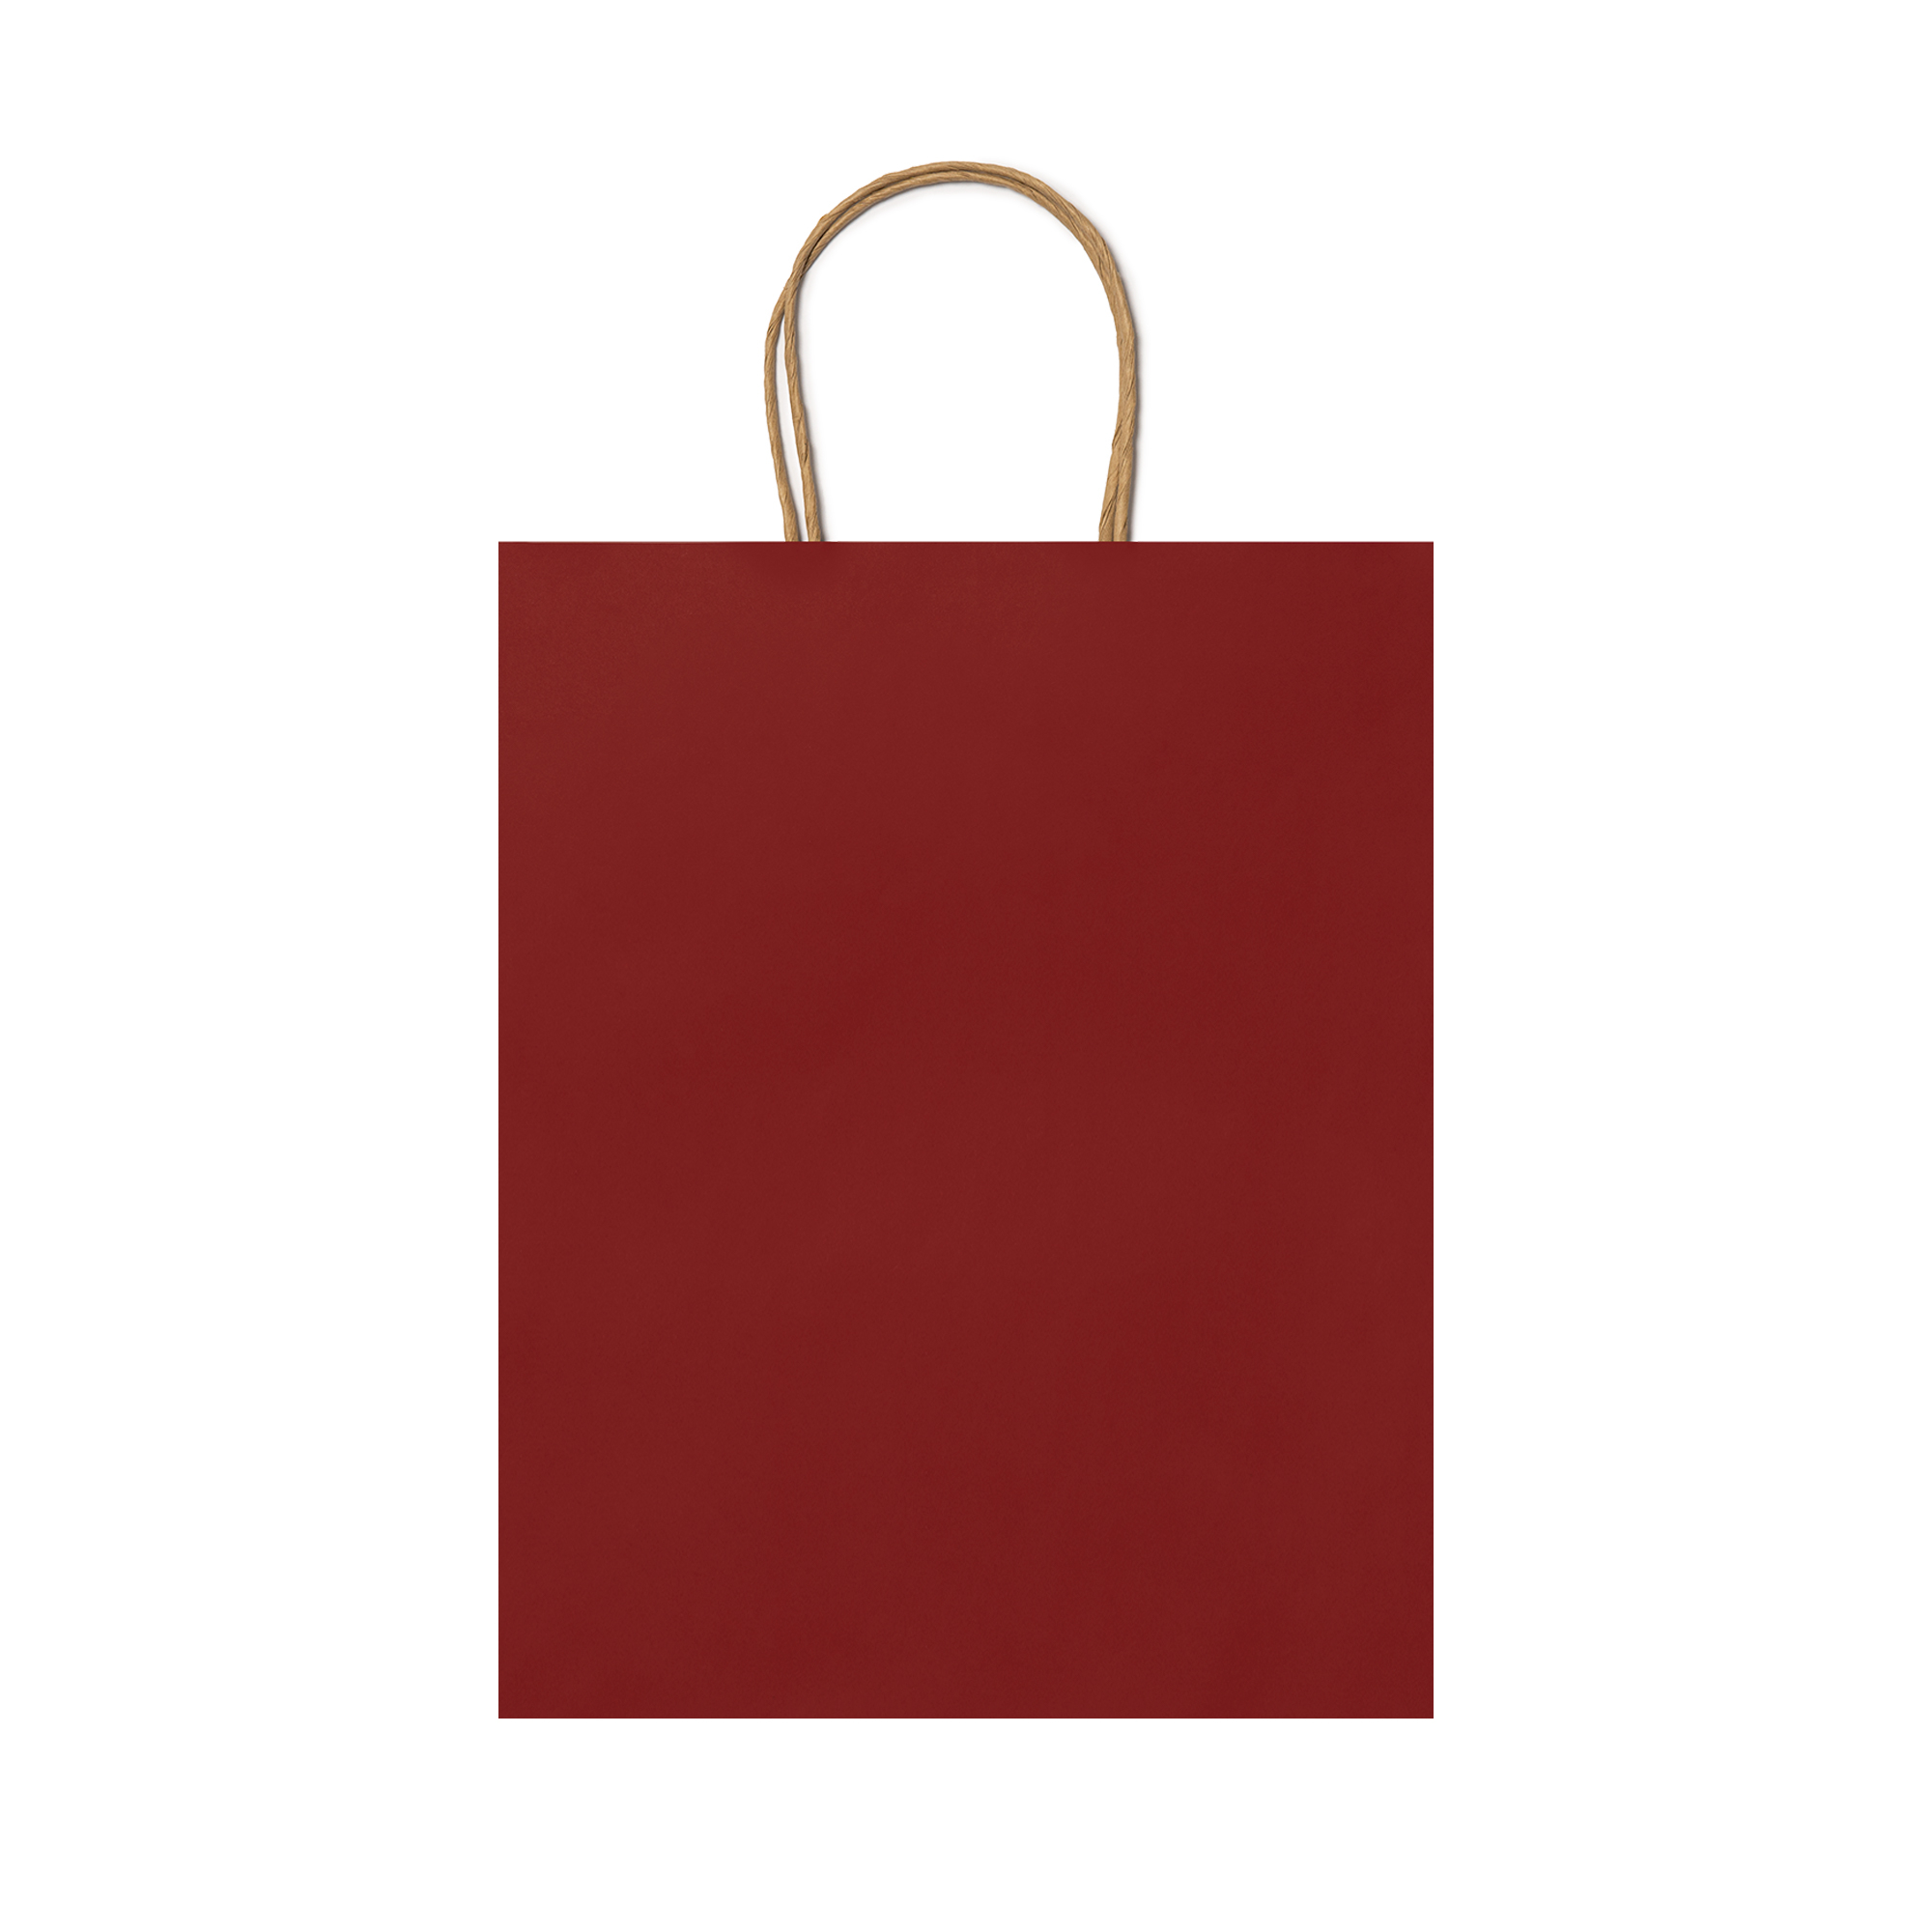 1033-venere-shopper-in-carta-naturale-rosso.jpg